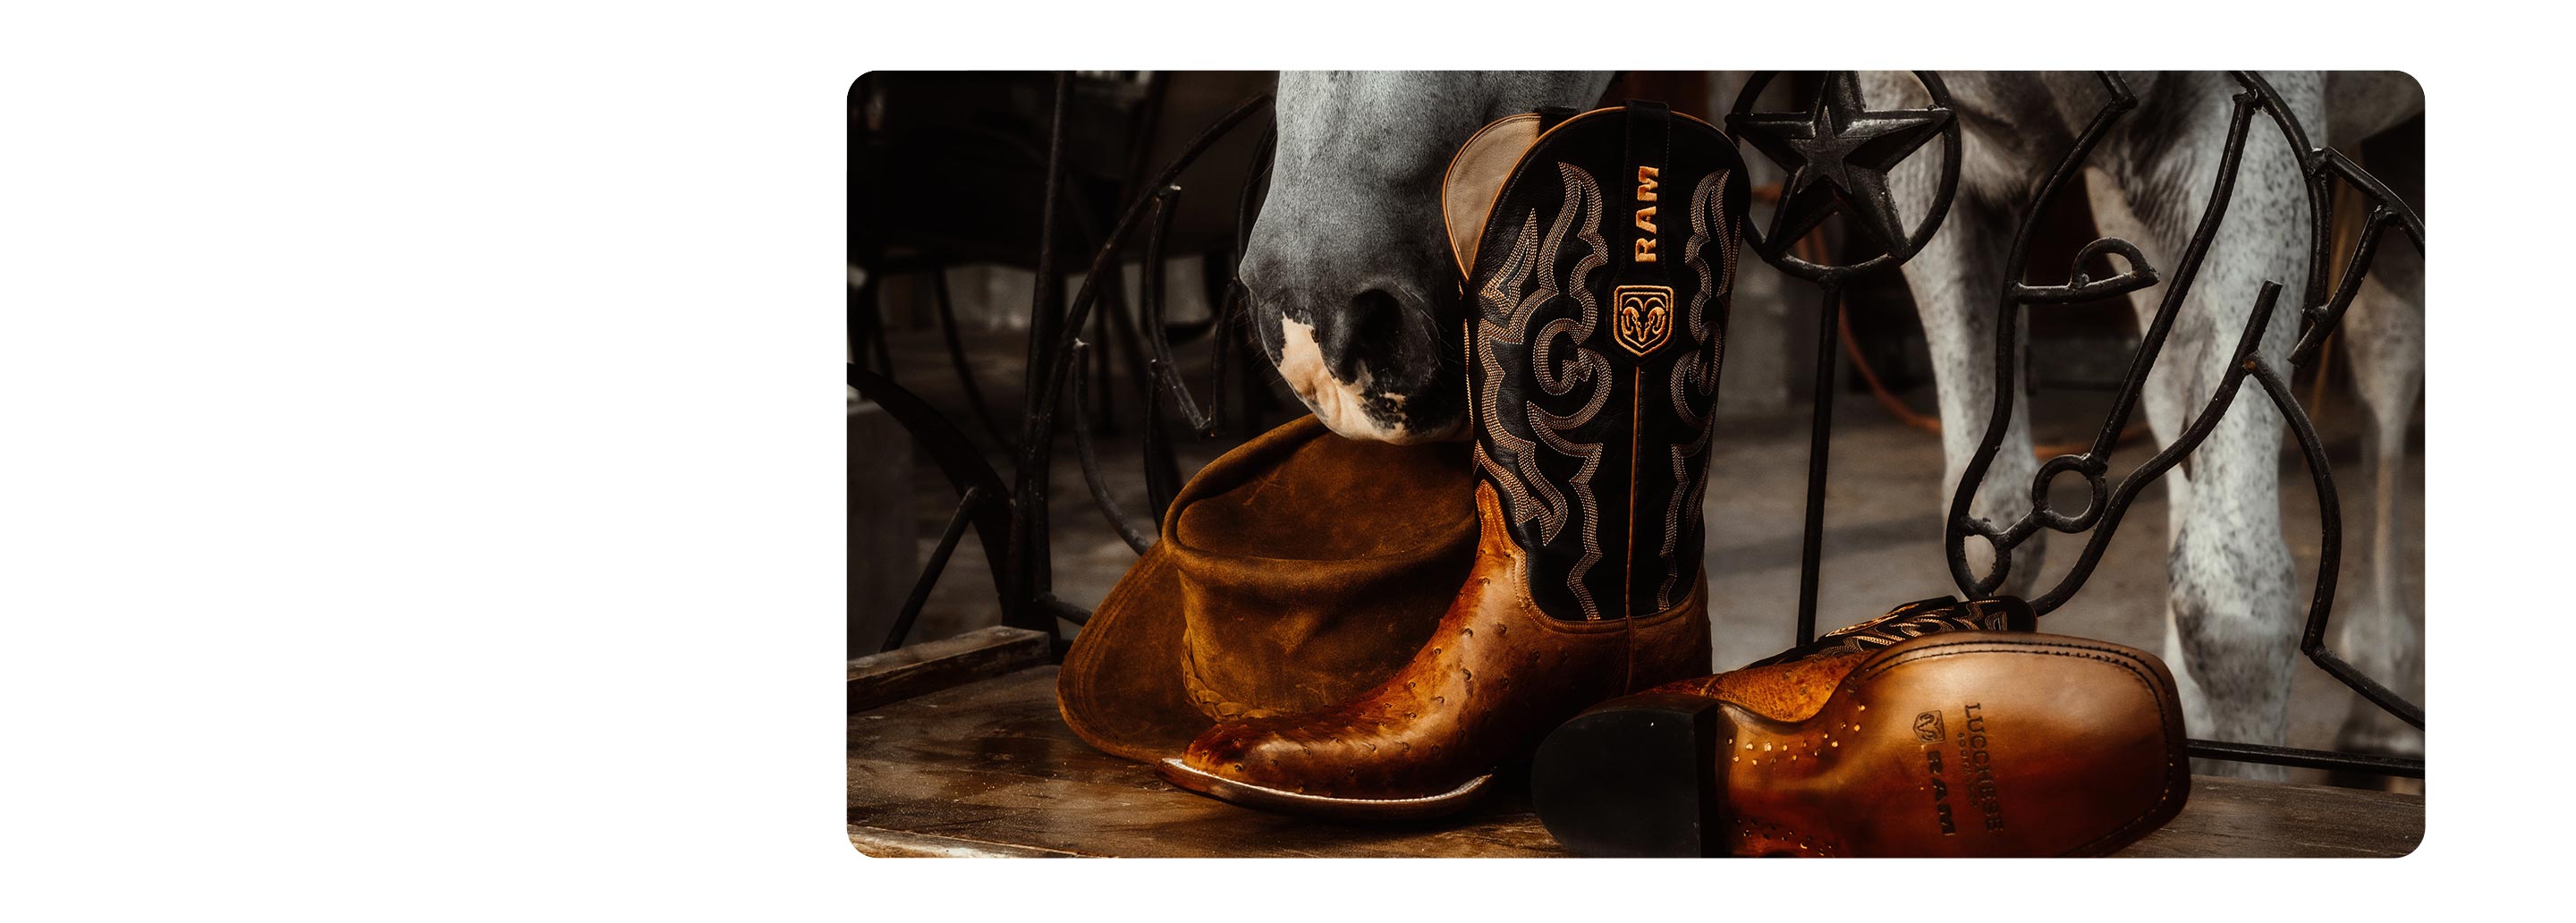 Primer plano de una bota de vaquero de cuero labrado detalladamente, adornada con el logo Ram's Head y la marca Ram.